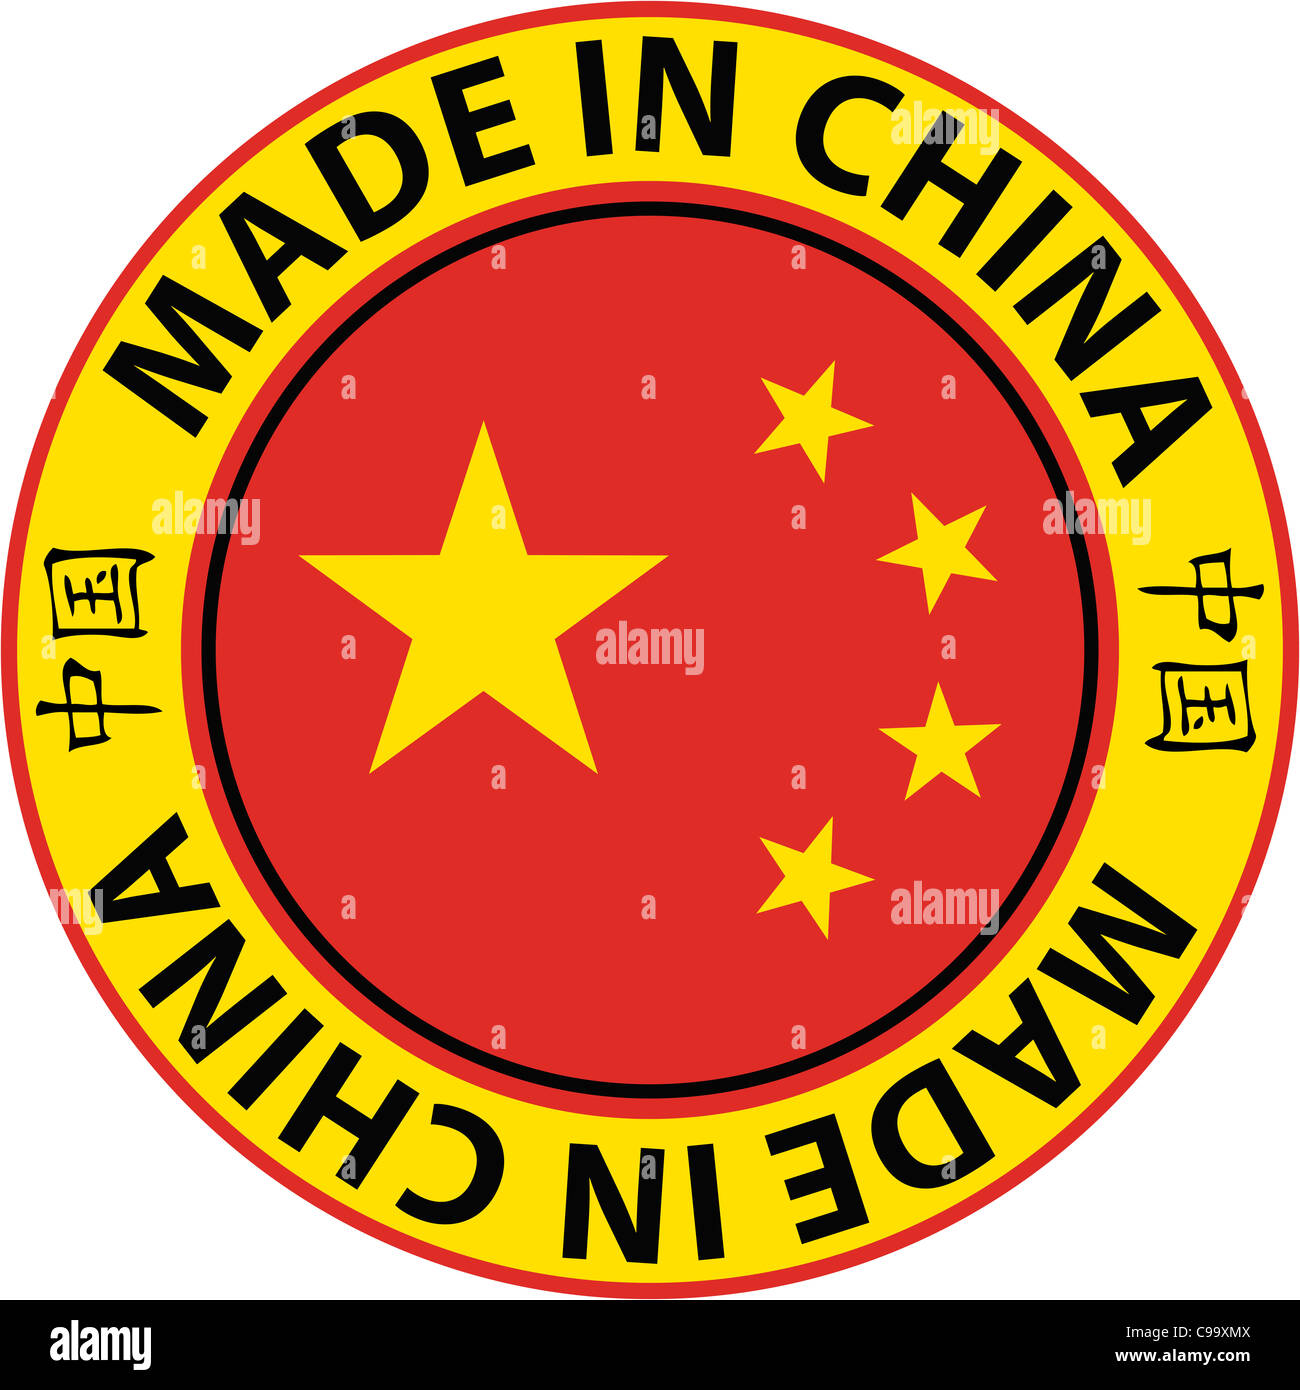 Eine Made in China runden Stempel Stil Aufkleber mit den chinesischen Schriftzeichen für "China" Stockfoto